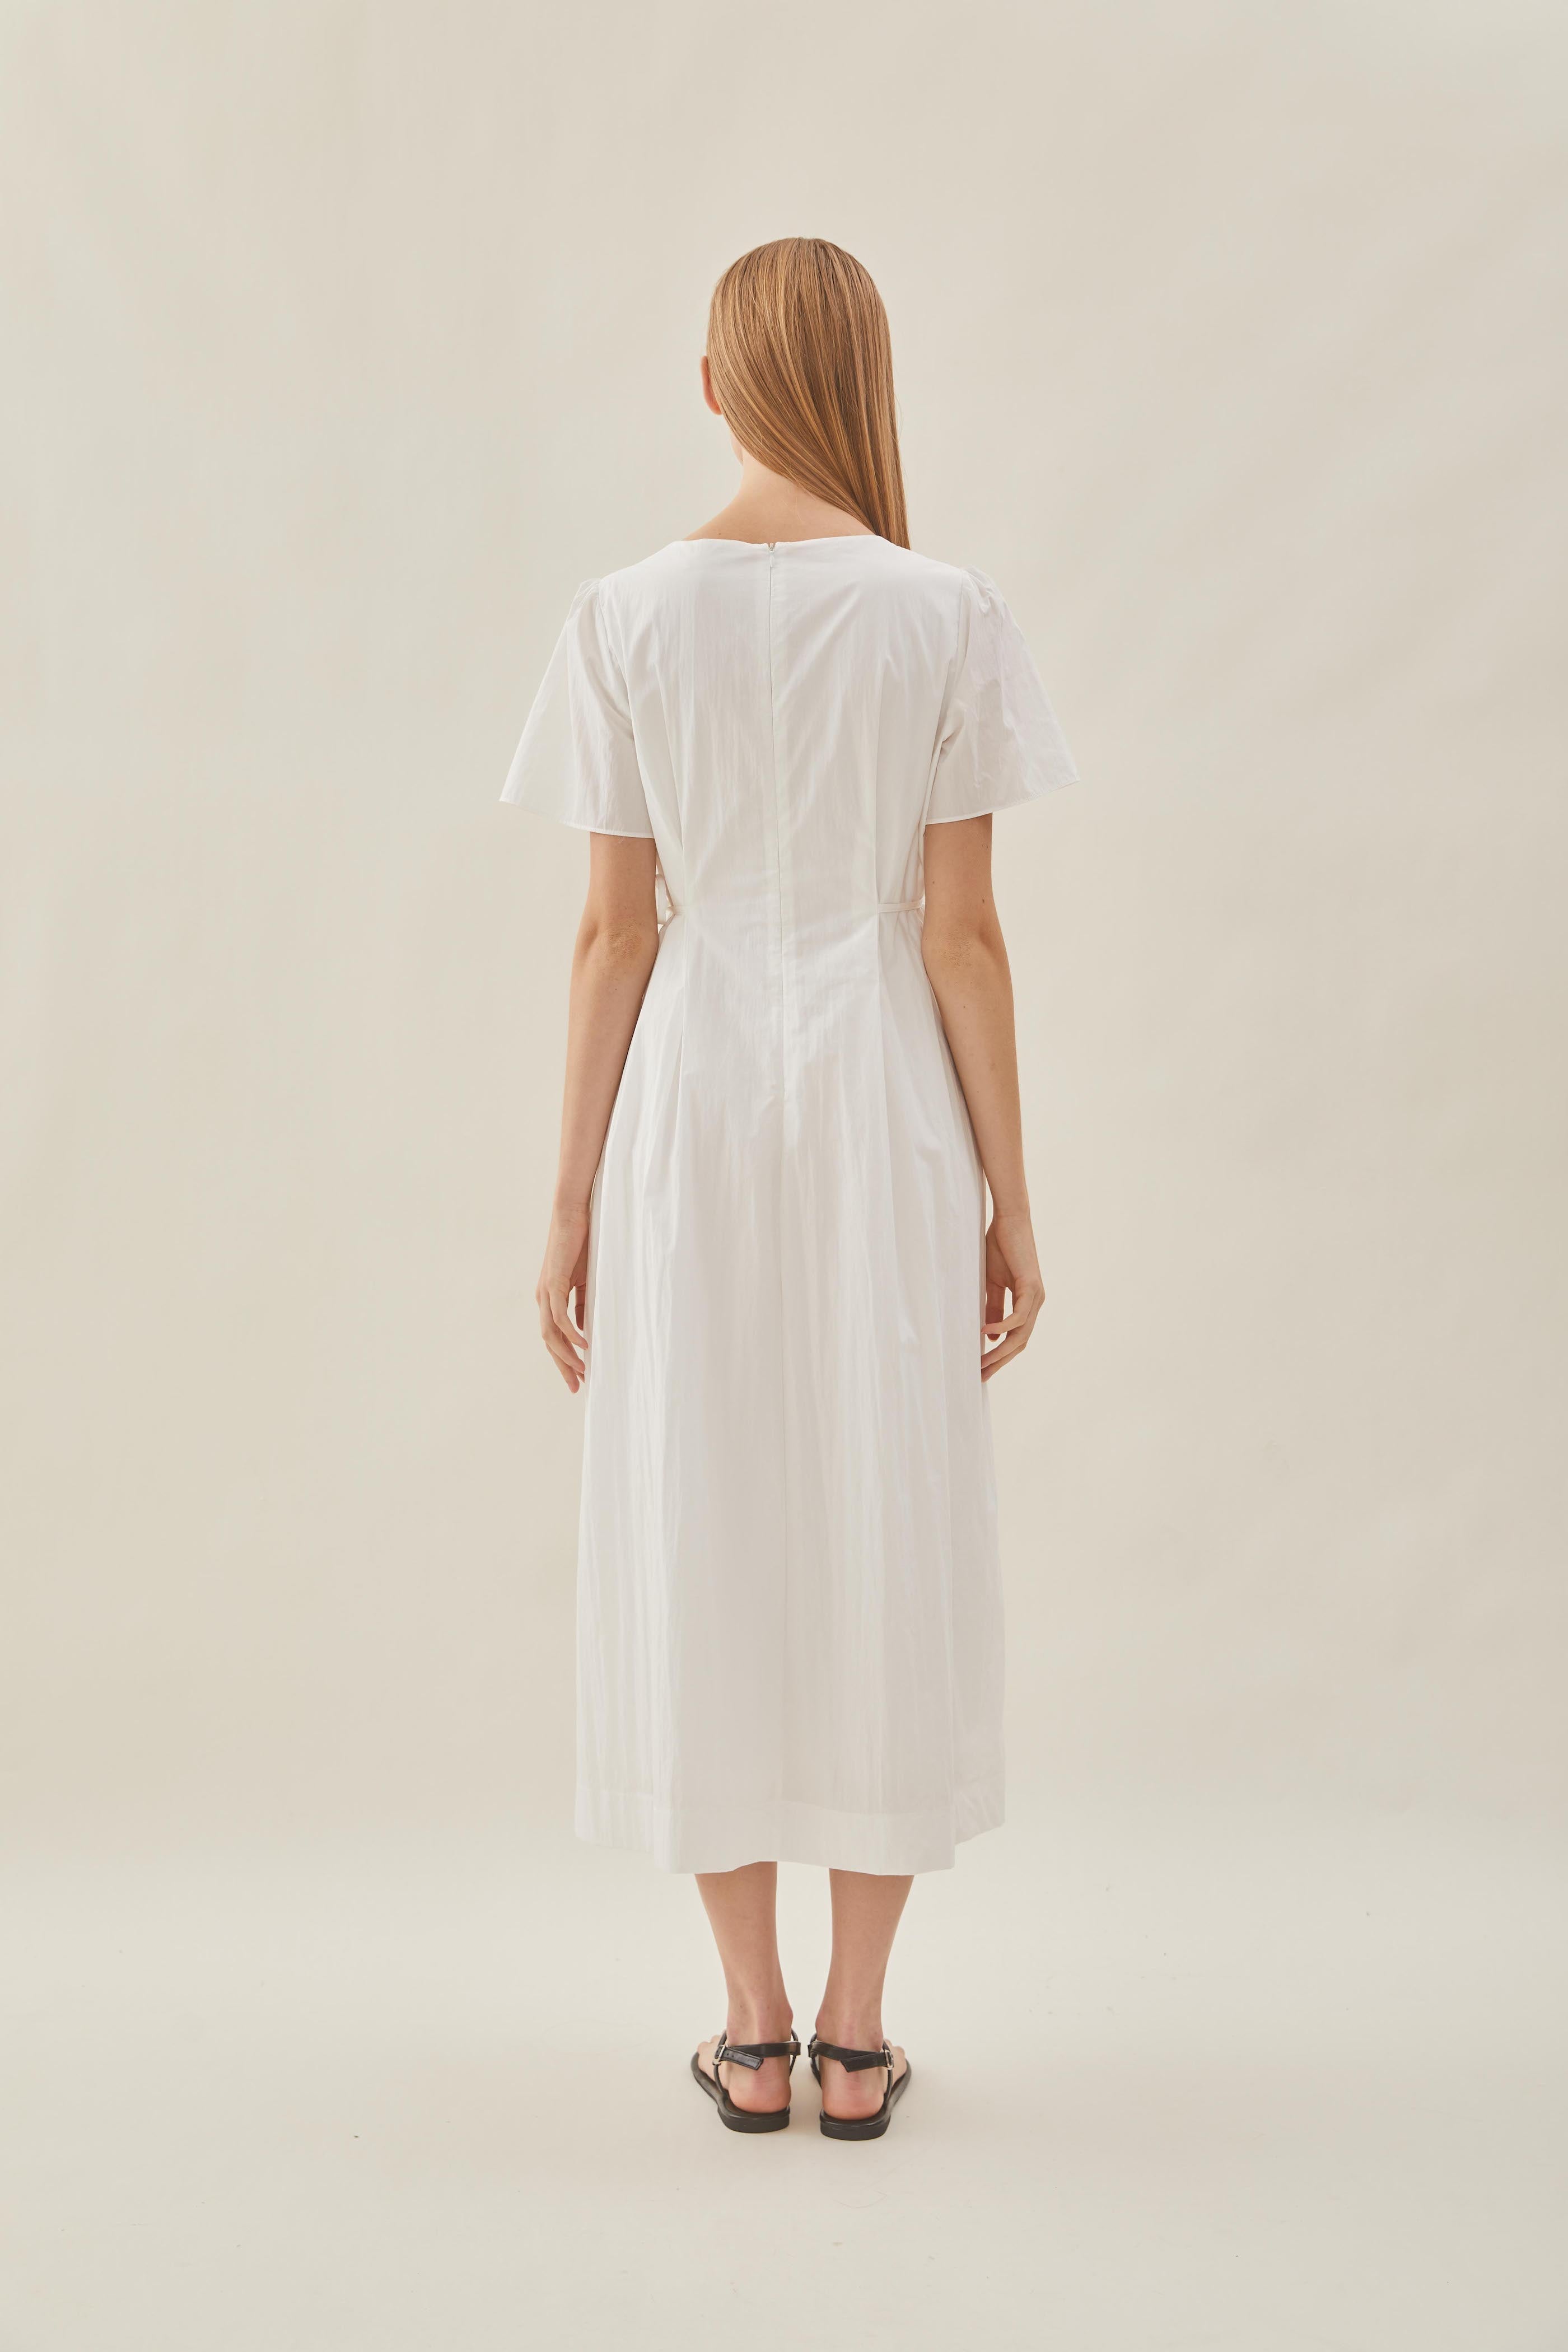 Tie Waist Dress in White